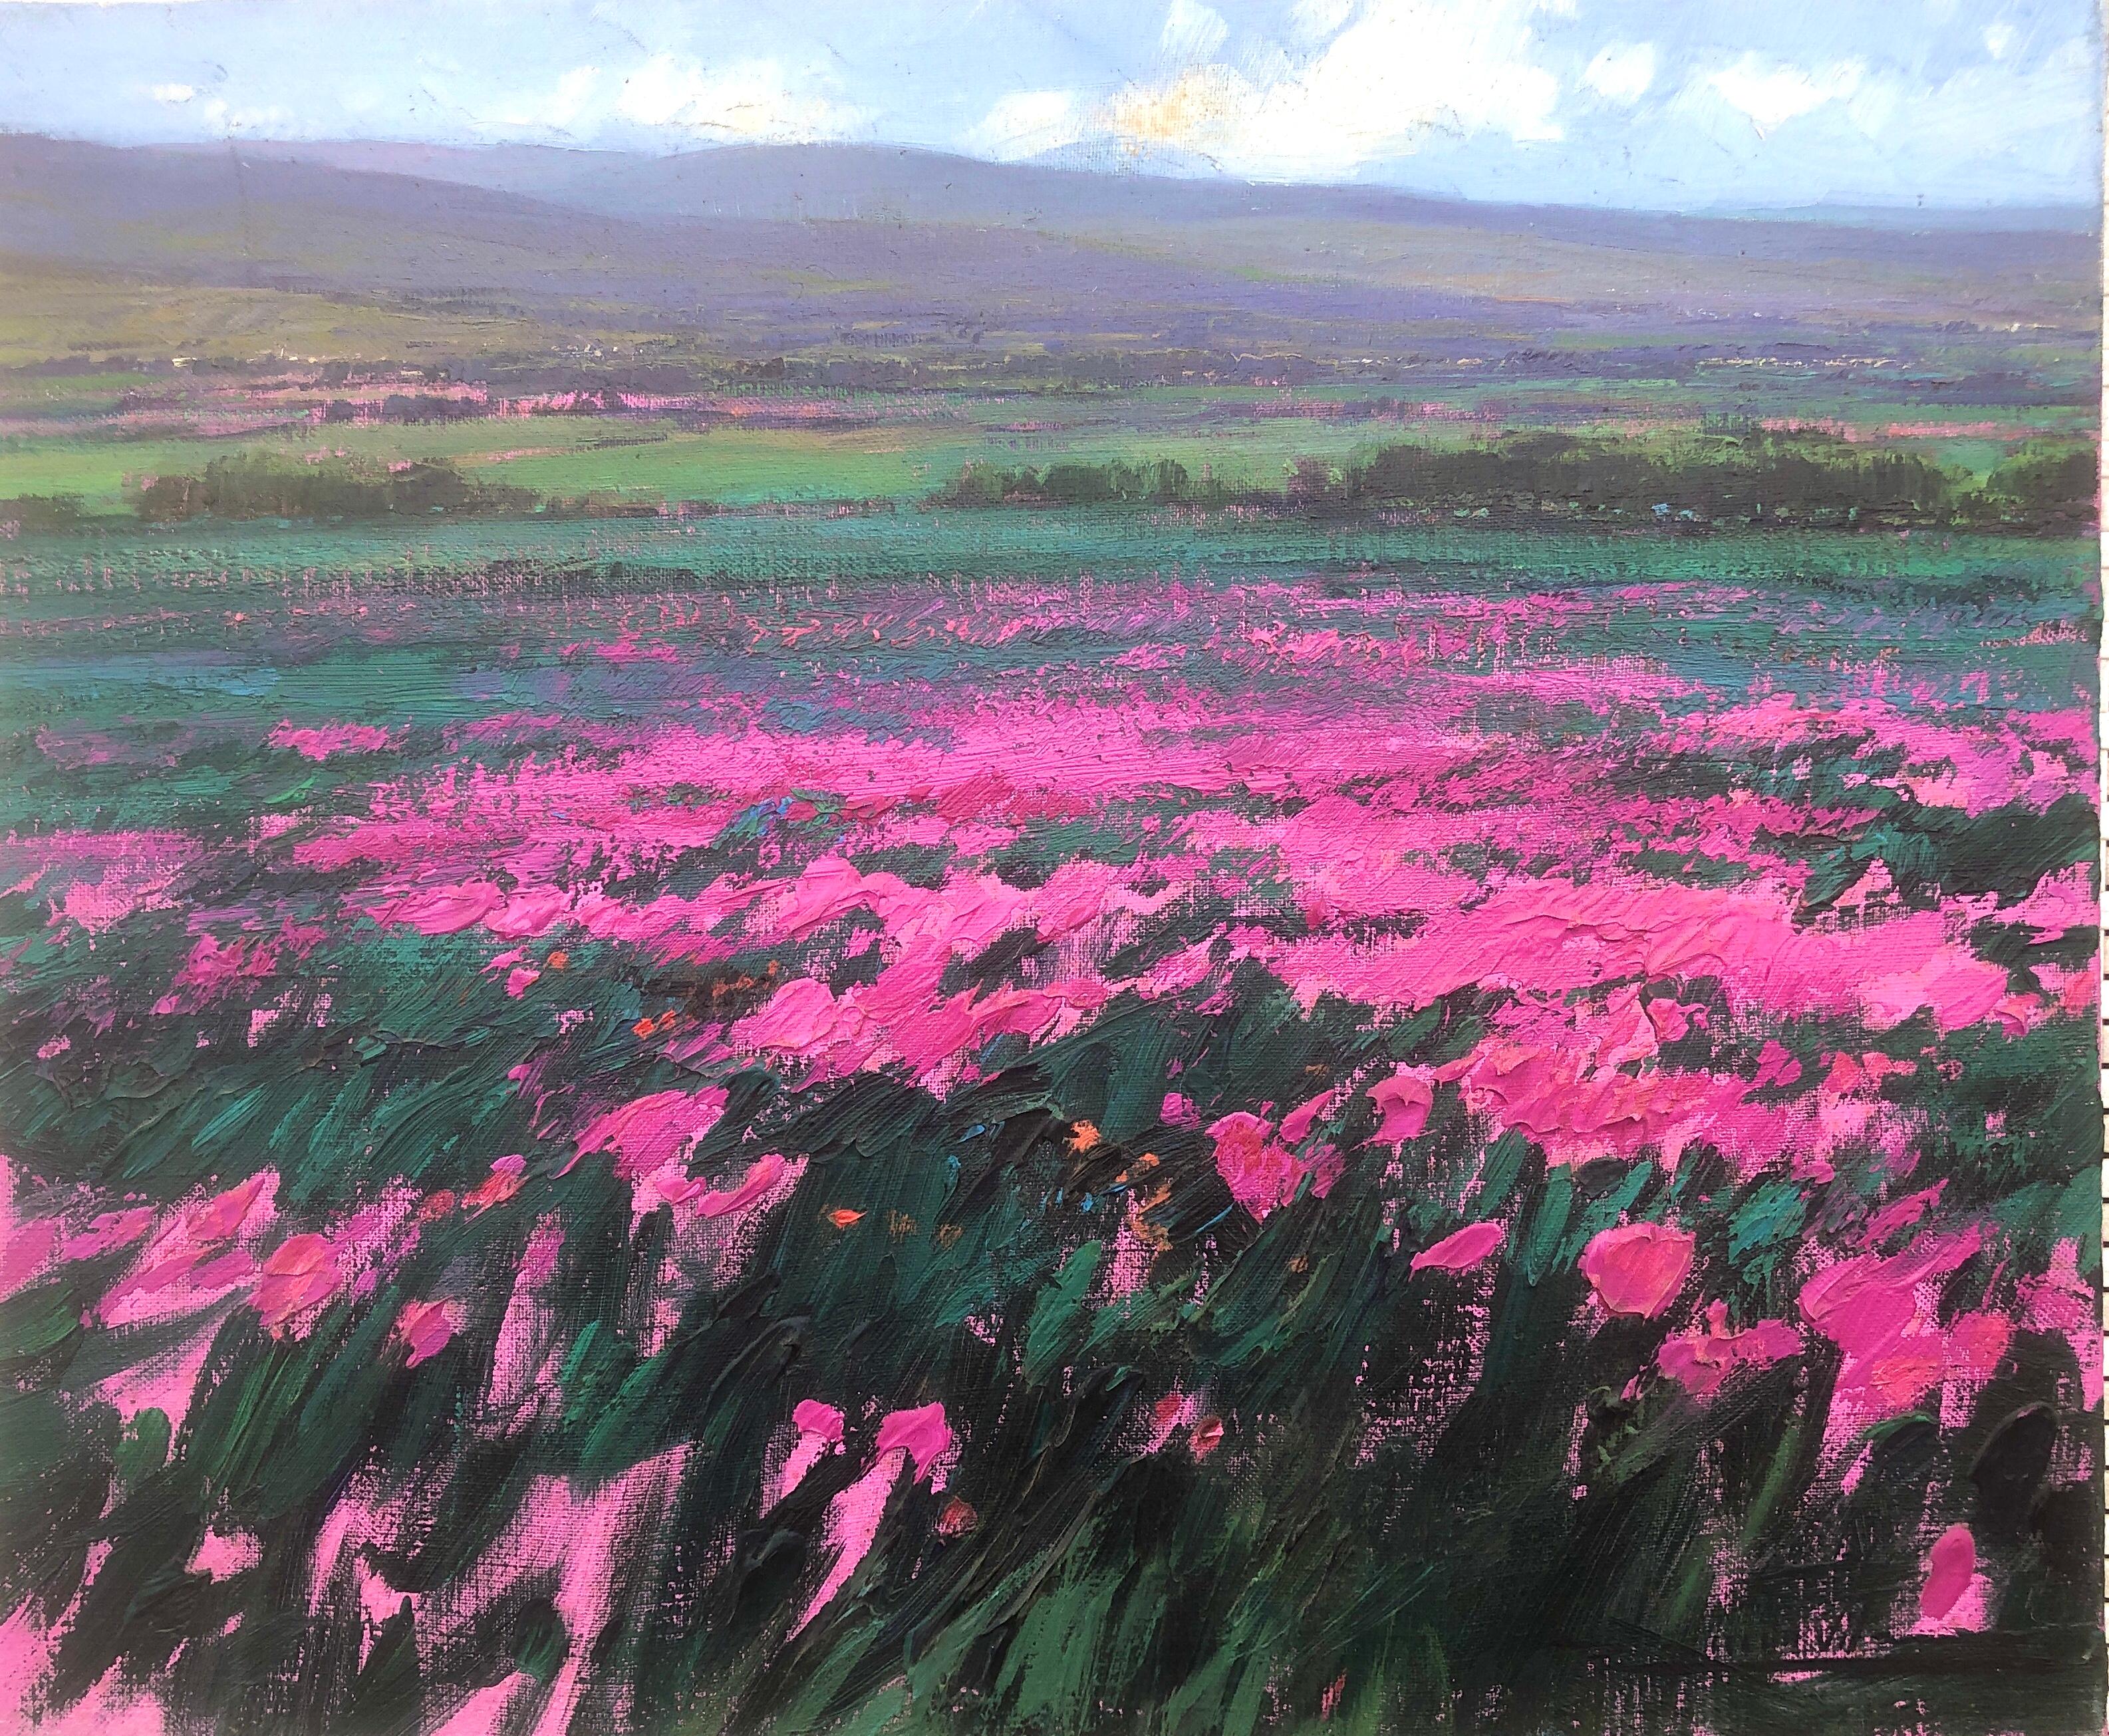 Landscape Painting Ramon Vila - Field of flowers huile sur toile peinture de paysage écossais